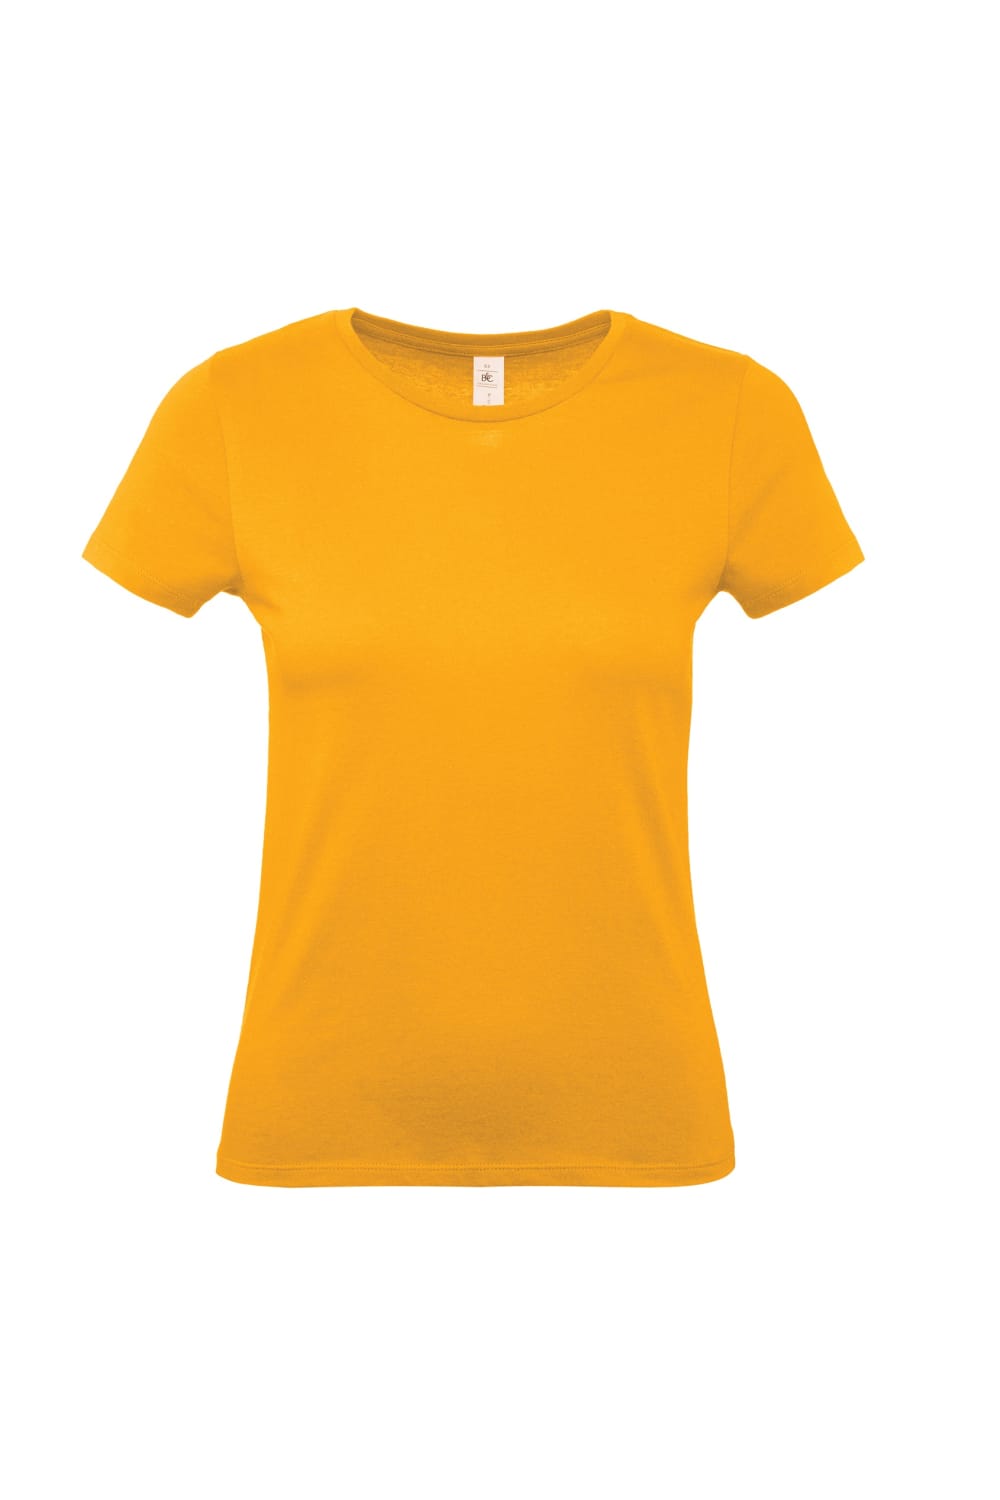 B&C Womens/Ladies E150 T-Shirt (Apricot)